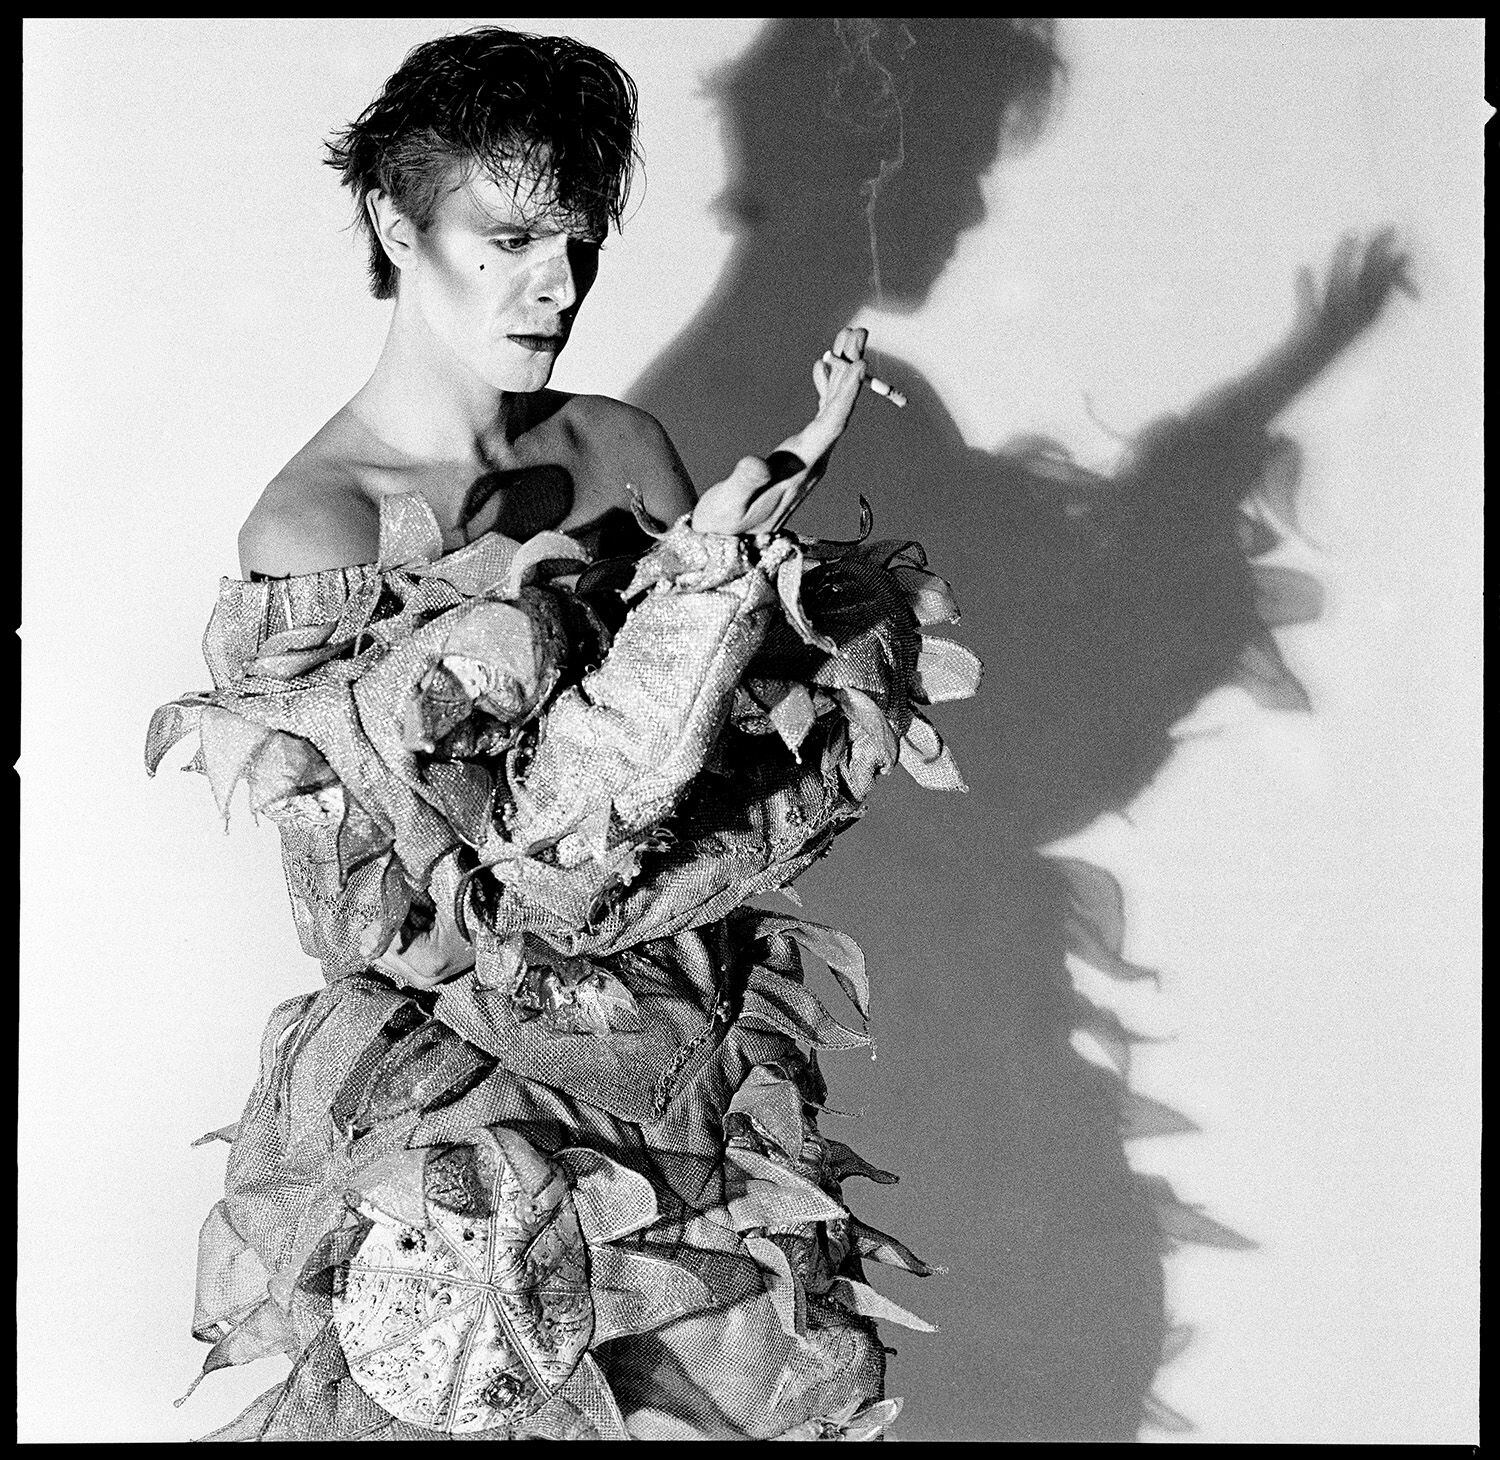 Como un Pierrot de 'after hours'. Así acabó David Bowie la sesión con Duffy para las imágenes que acompañaron el disco 'Scary monsters' (1980). La imagen forma parte de la exposición 'Bowie taken by Duffy', en Madrid.